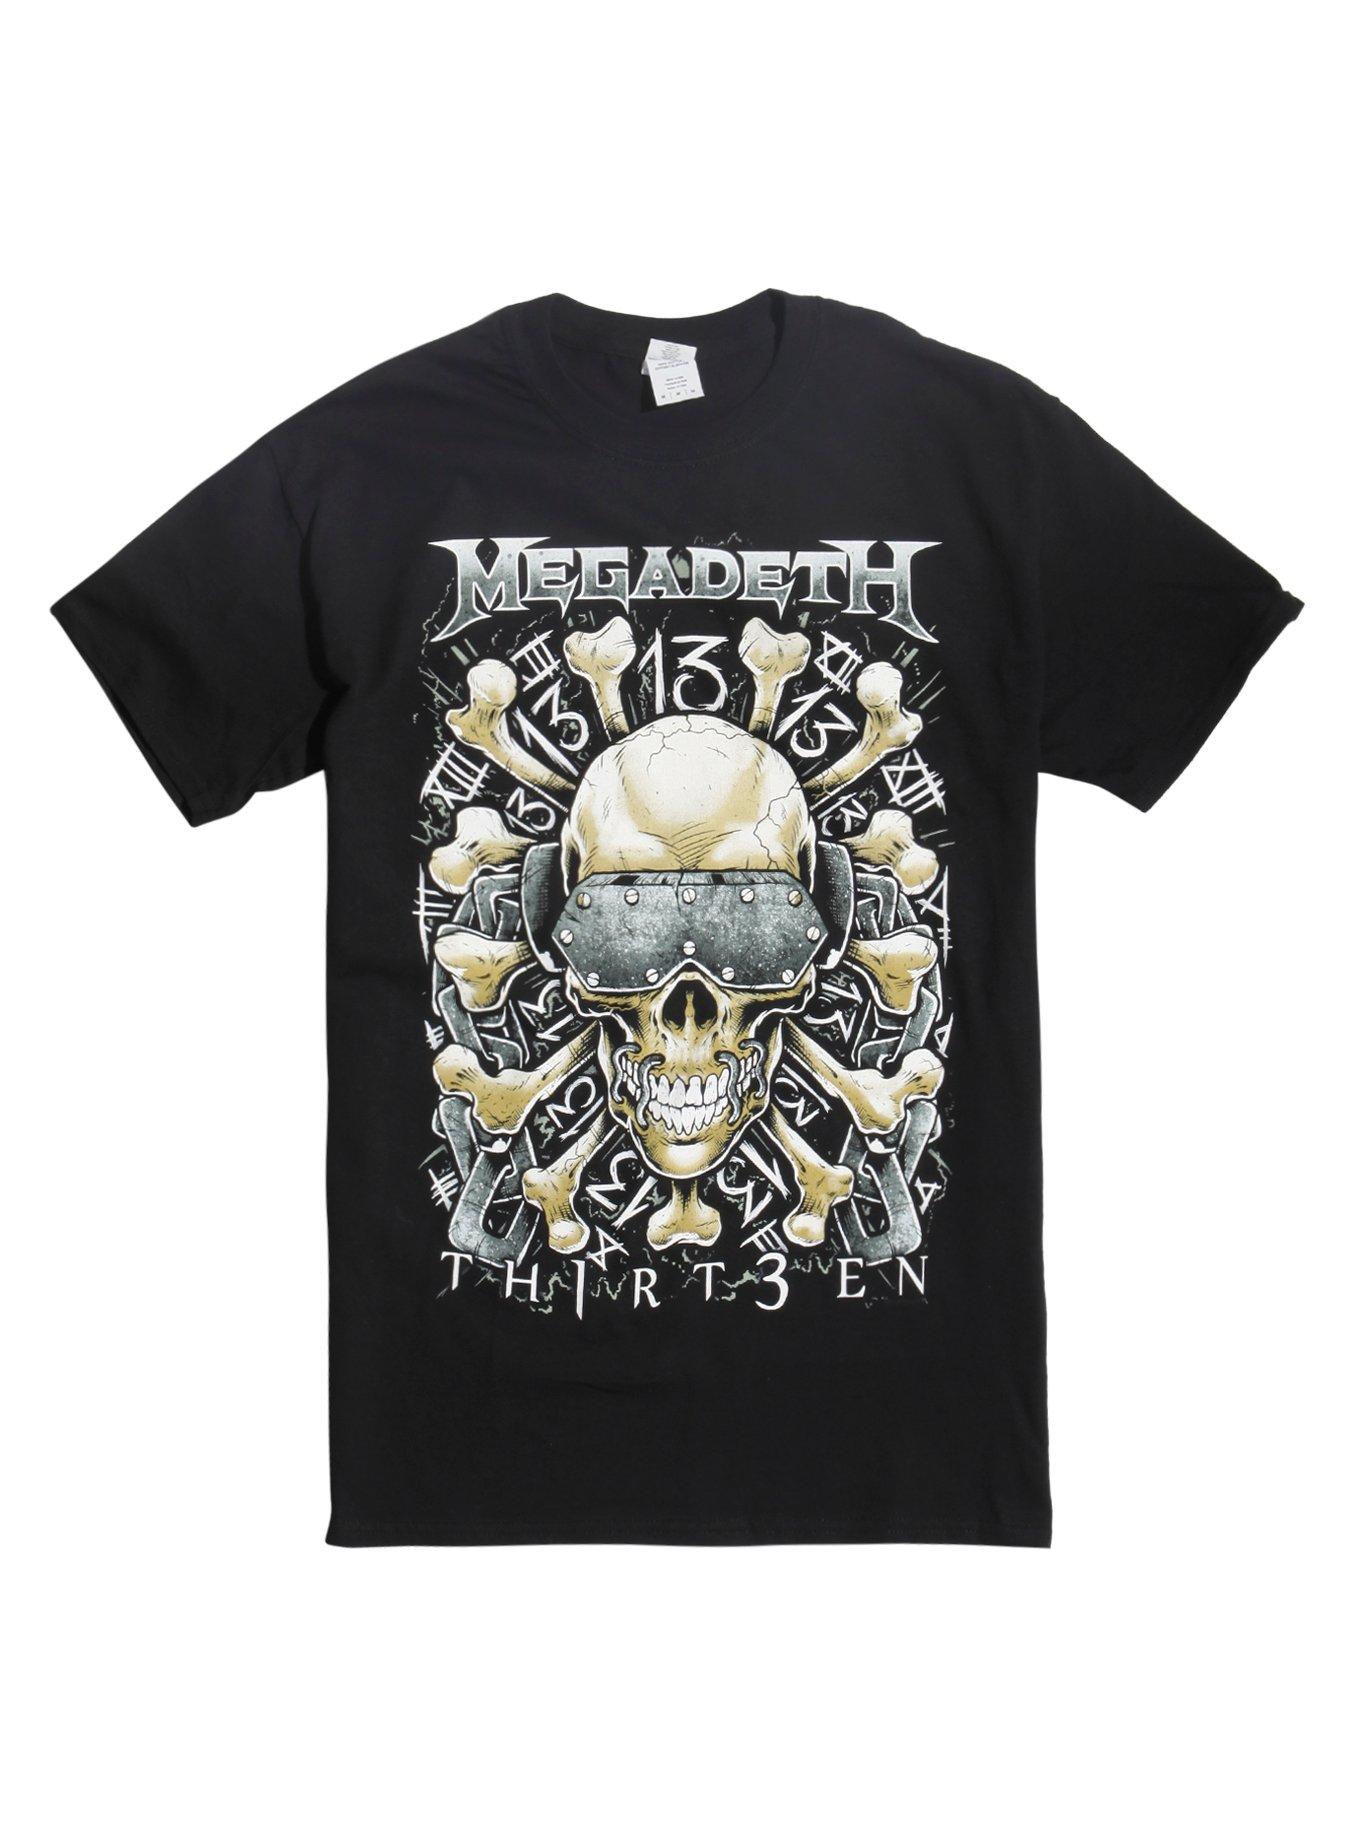 Megadeth TH1RT3EN Skull & Crossbones T-Shirt, BLACK, hi-res